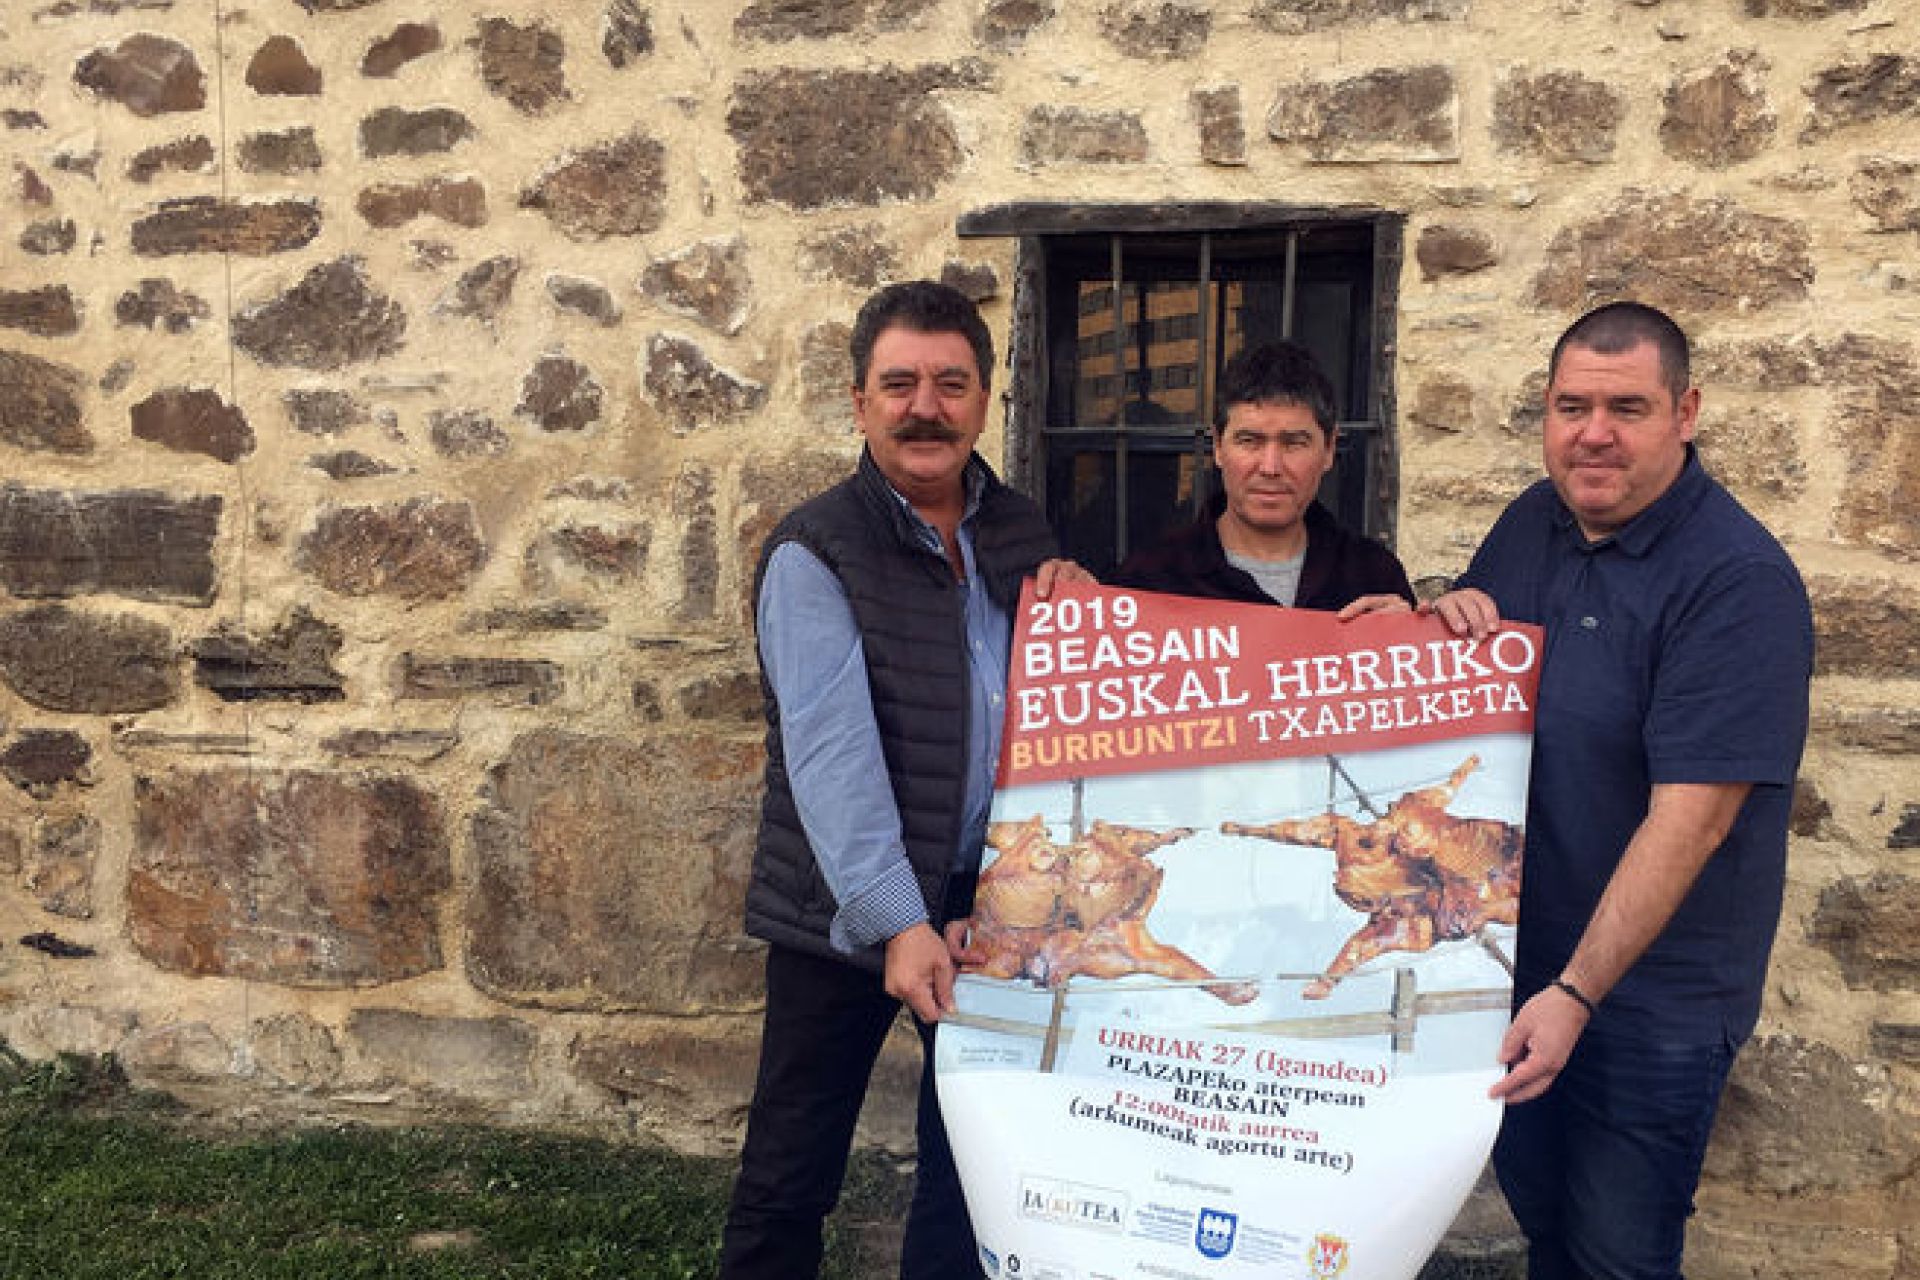 Los mejores parrilleros de Euskal Herria se citan el domingo en Beasain